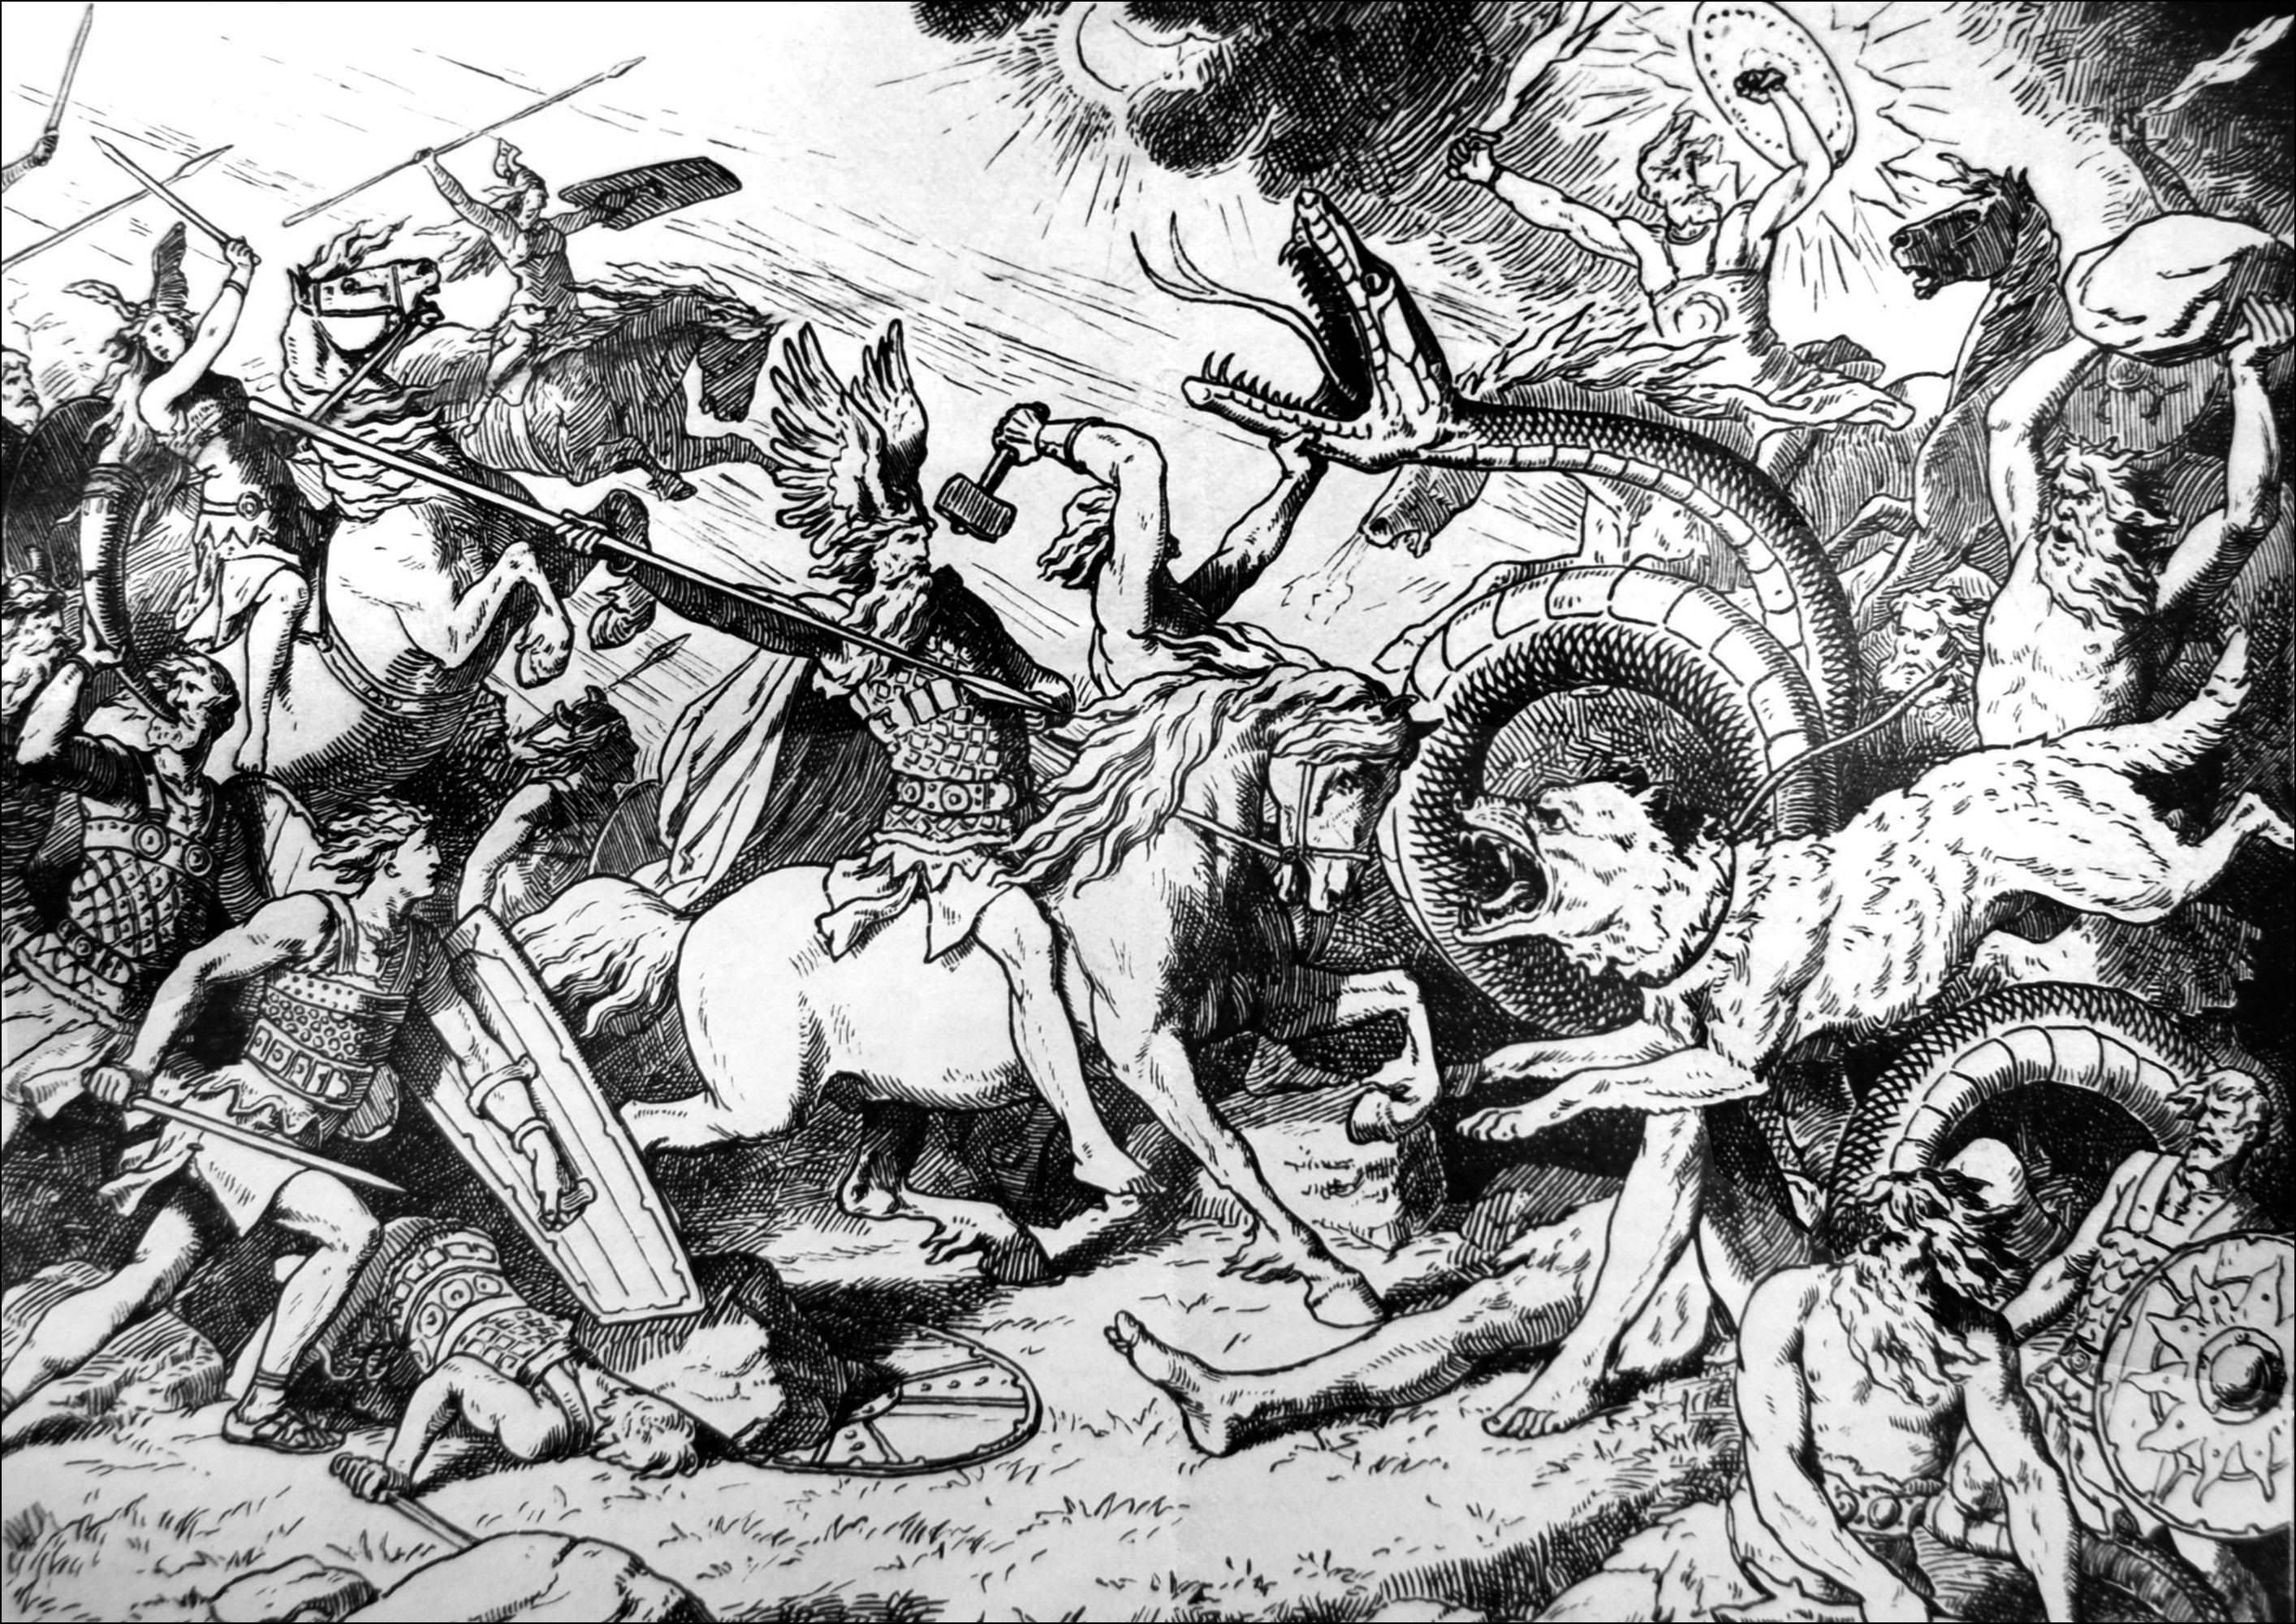 Ragnarok, o dia do juízo final viking - ilustração de Johannes Gehrts (1855, 1921). O Ragnarök é o apocalipse da mitologia nórdica. Ele